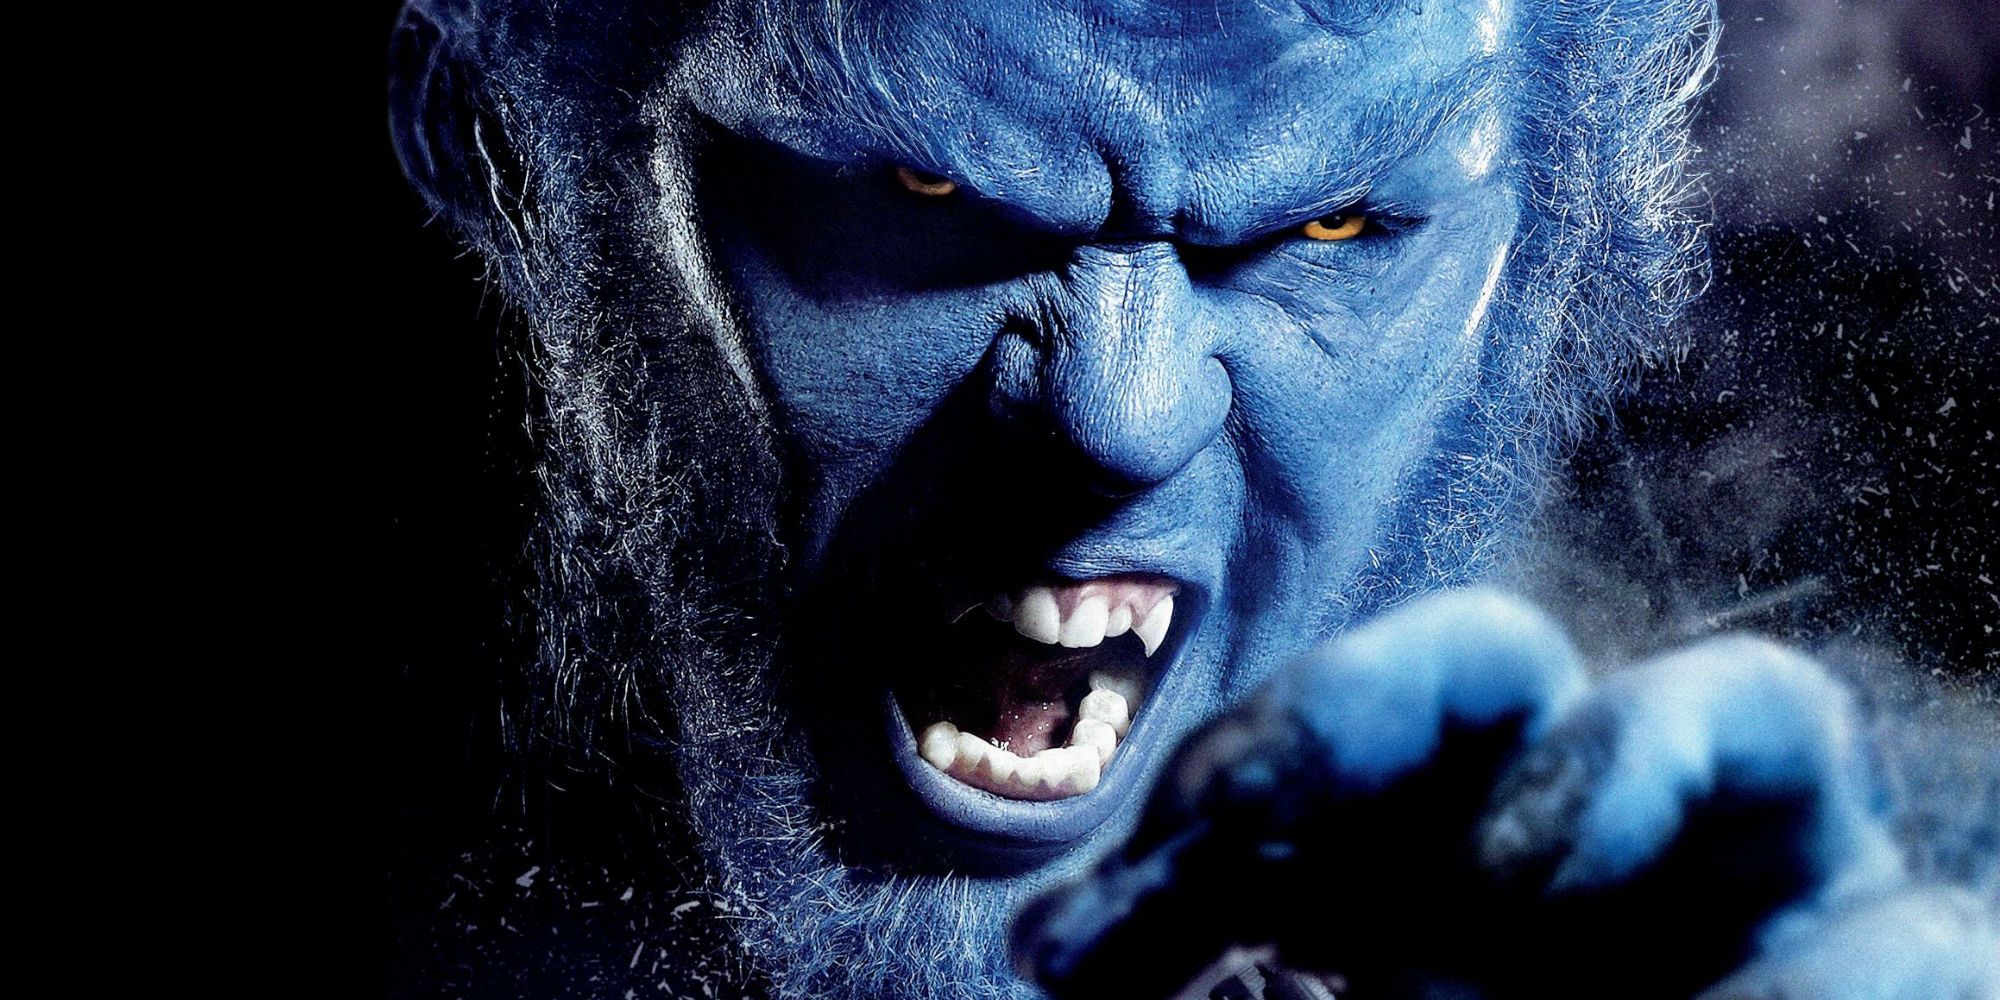 Beast X-Men Nicholas Hoult roaring in promotional image